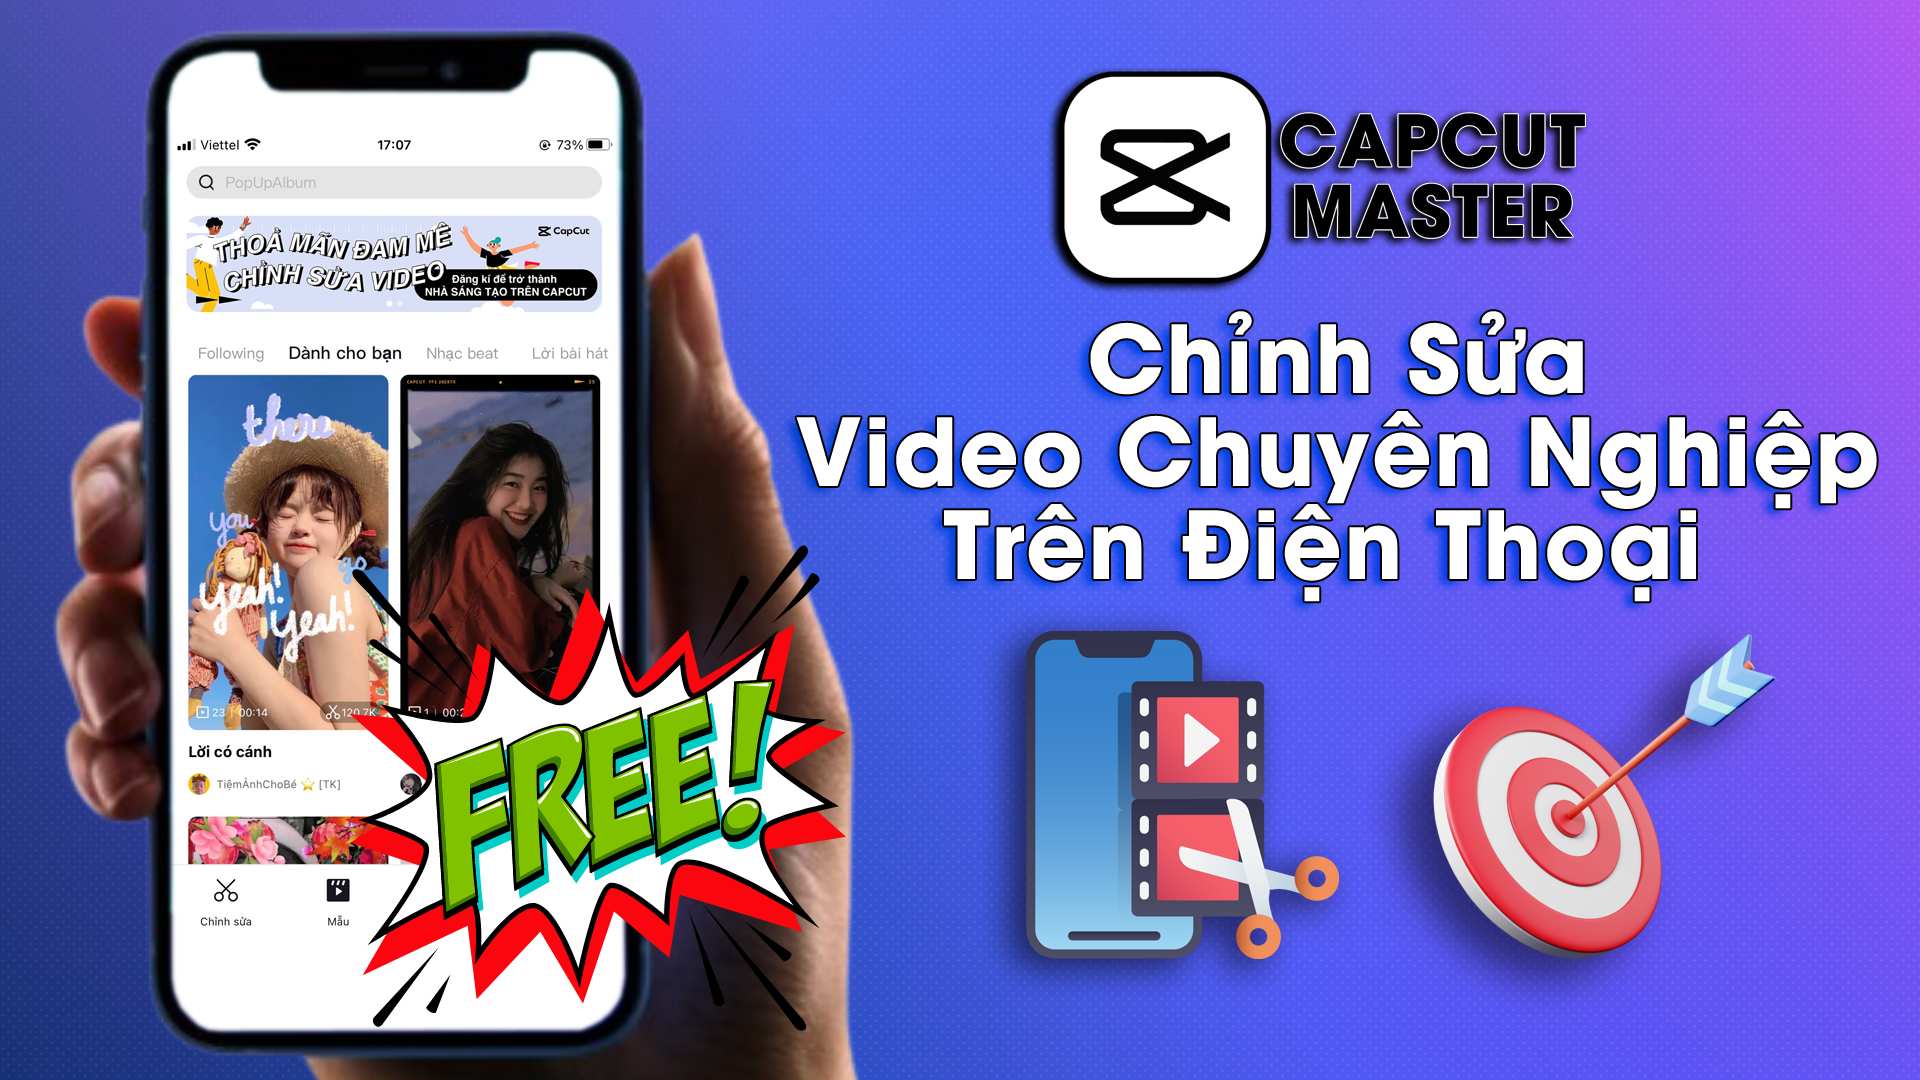 CapCut Master – Chỉnh Sửa Video Chuyên Nghiệp Trên Điện Thoại (Free)